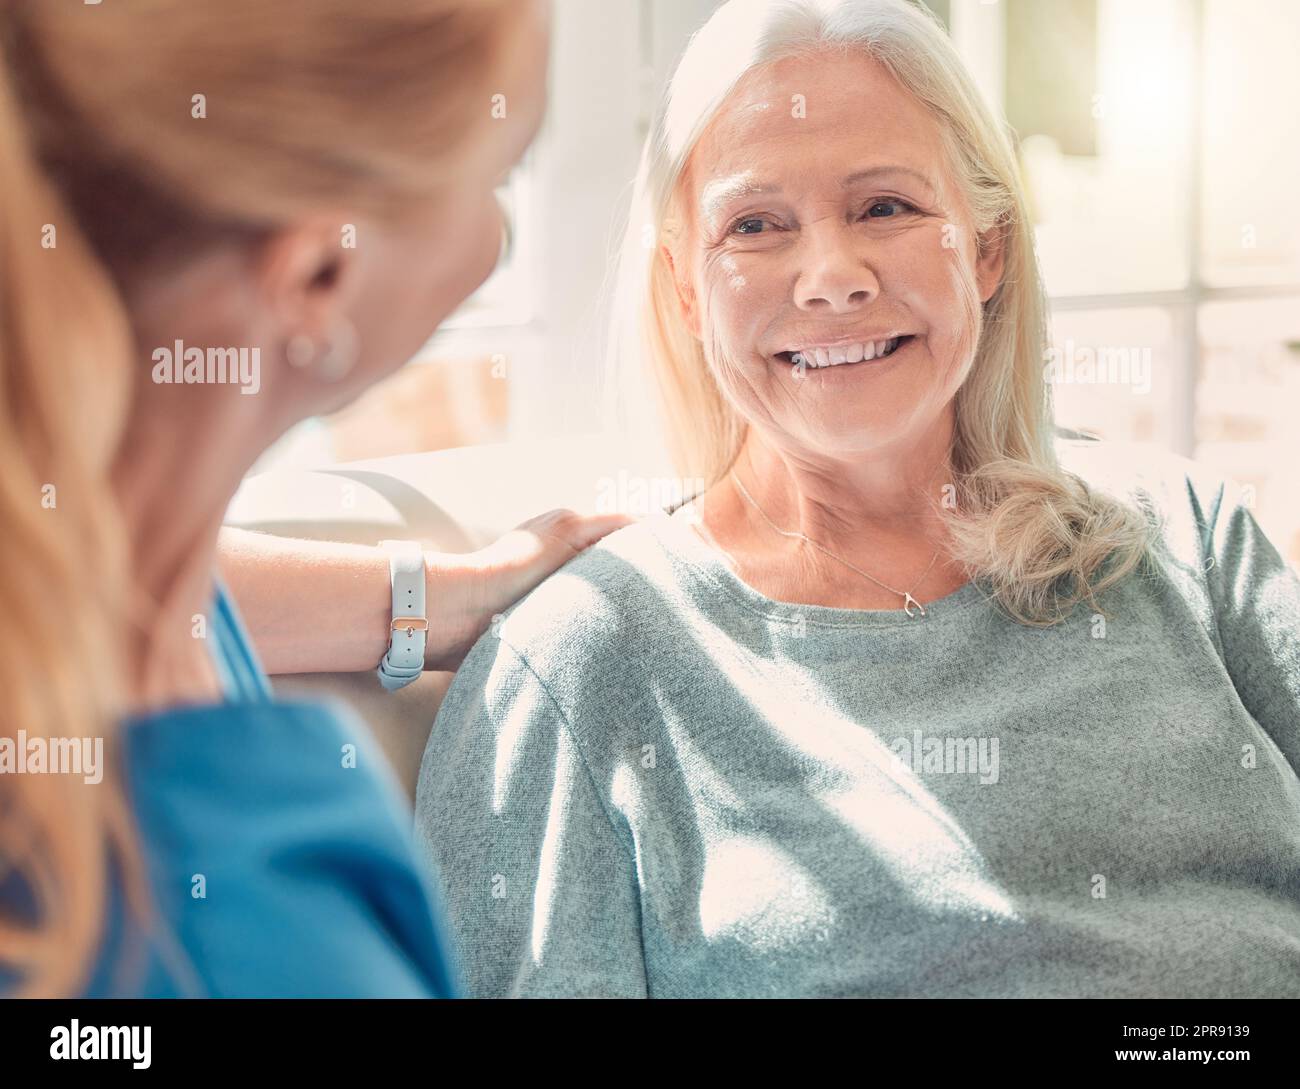 C'è più felicità nel dare che nel ricevere: Una donna anziana è sostenuta dalla sua infermiera a casa. Foto Stock